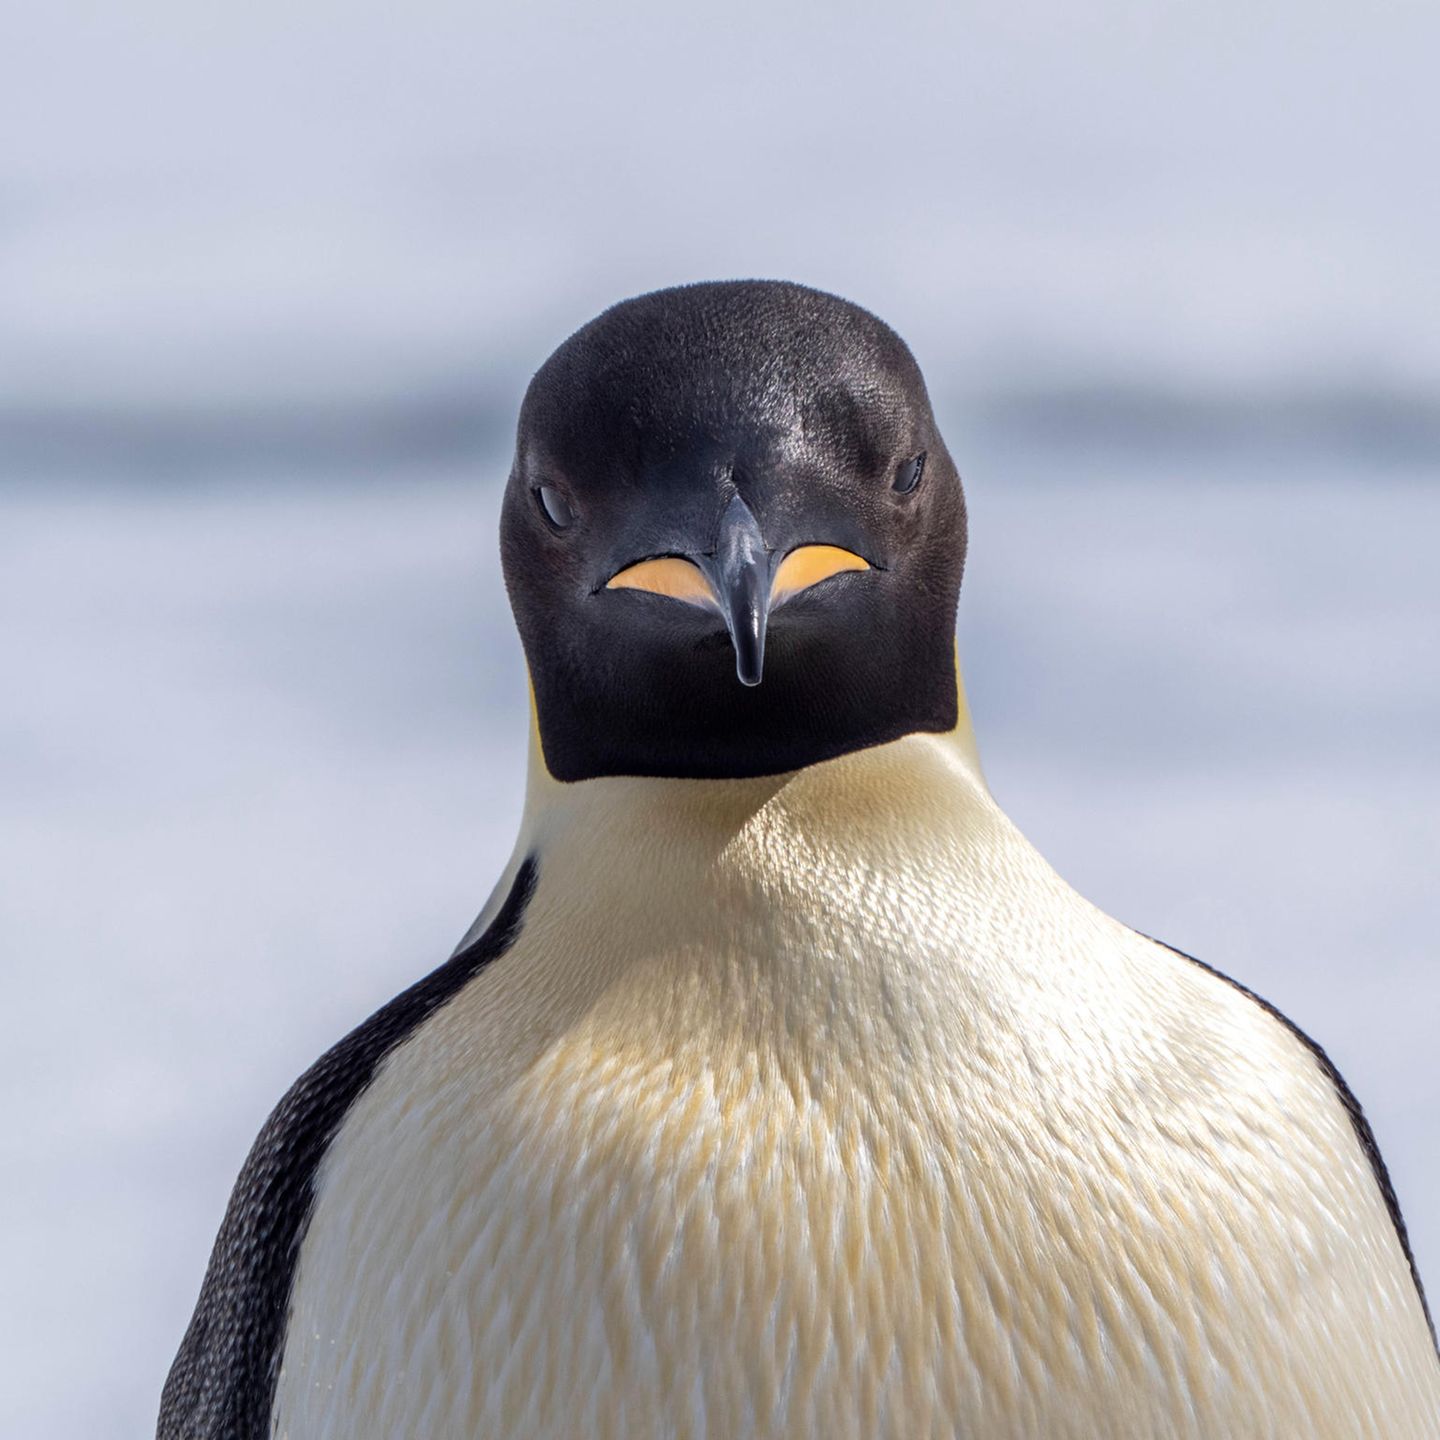 Pinguin aus der Urzeit war so schwer wie ein Schwarzbär